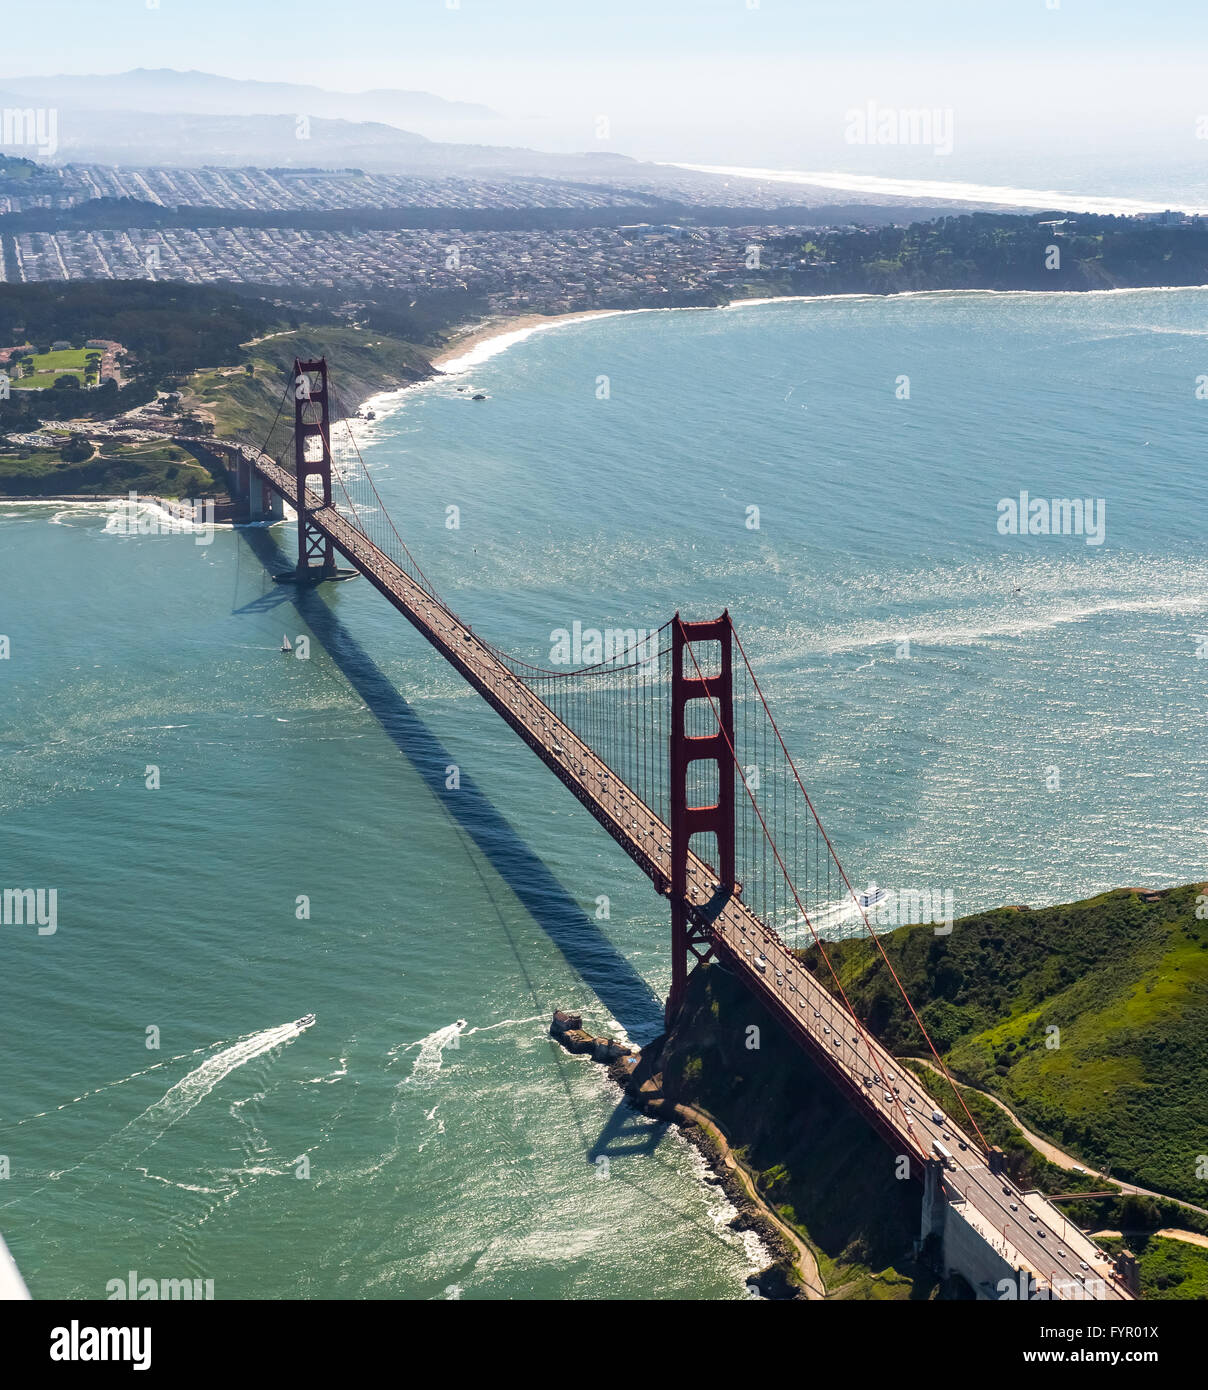 Vista aérea del Puente Golden Gate, como se ve desde el área de la bahía, San Francisco, San Francisco Bay Area, California, EE.UU. Foto de stock